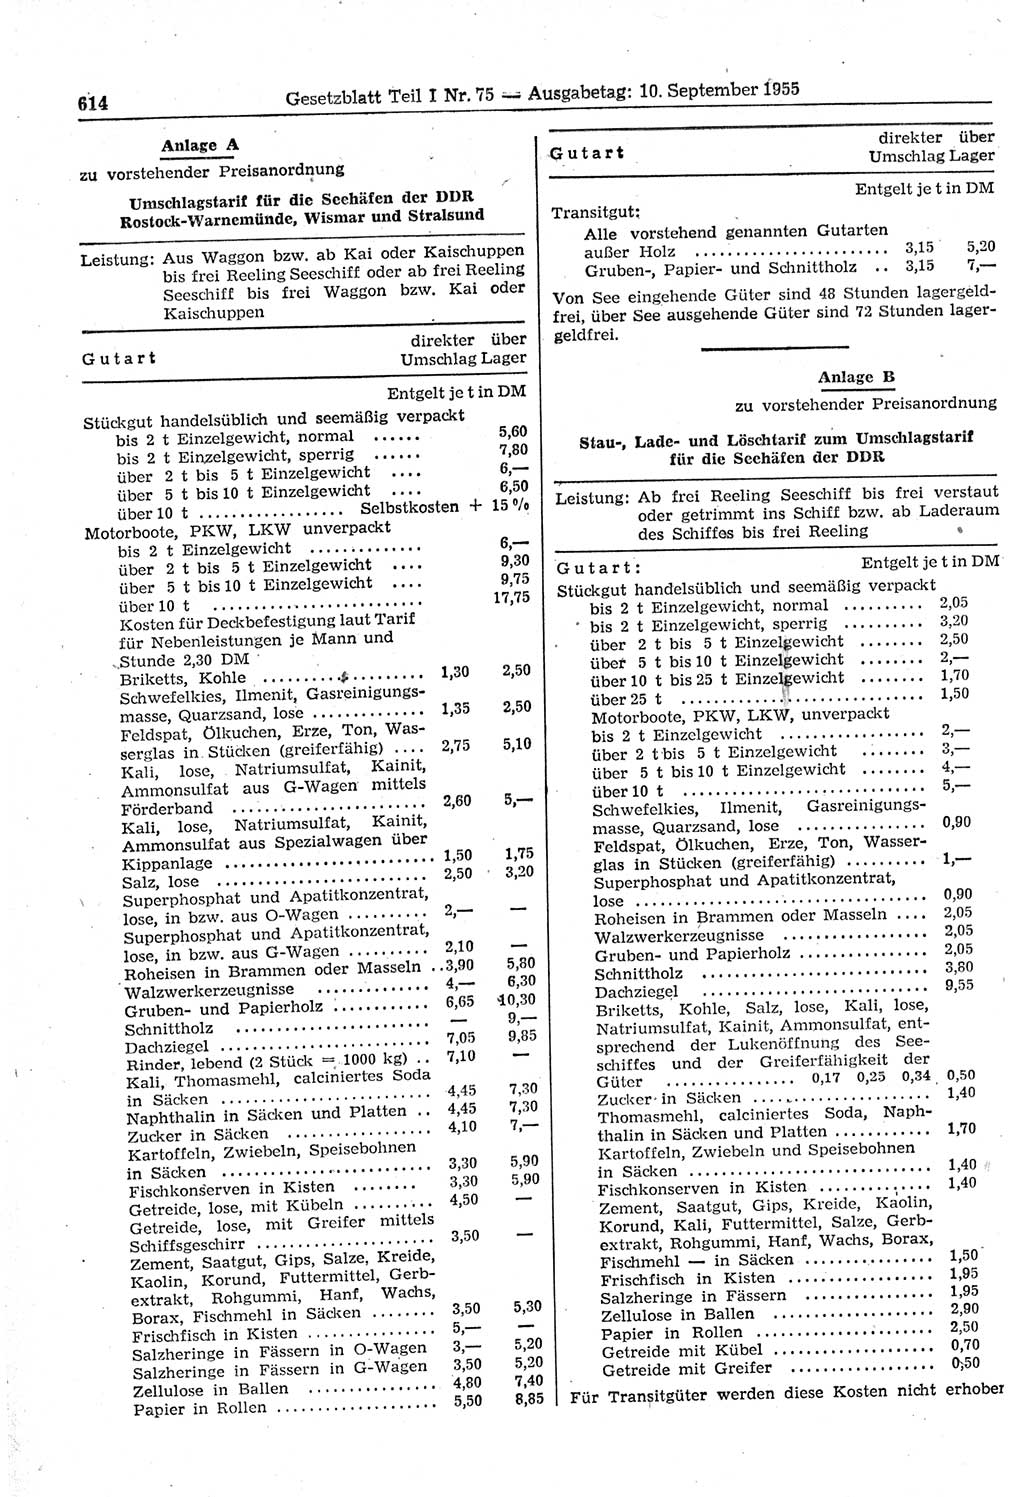 Gesetzblatt (GBl.) der Deutschen Demokratischen Republik (DDR) Teil Ⅰ 1955, Seite 614 (GBl. DDR Ⅰ 1955, S. 614)